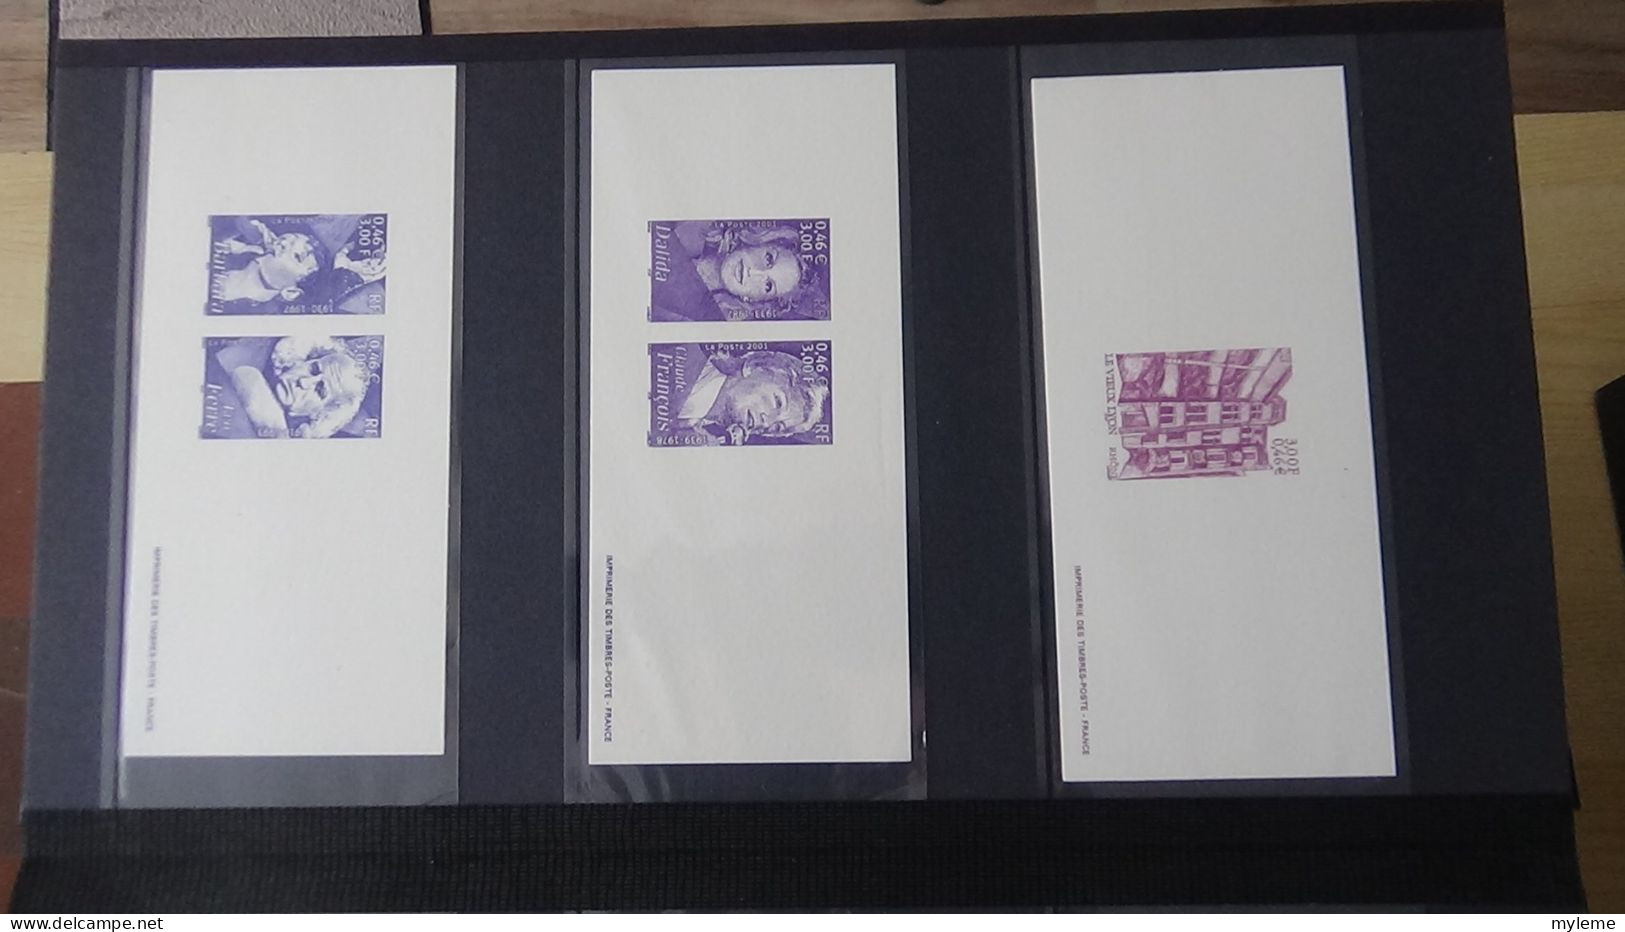 BF75 Gravures des timbres-poste de France sans son album d'origine   A saisir !!!